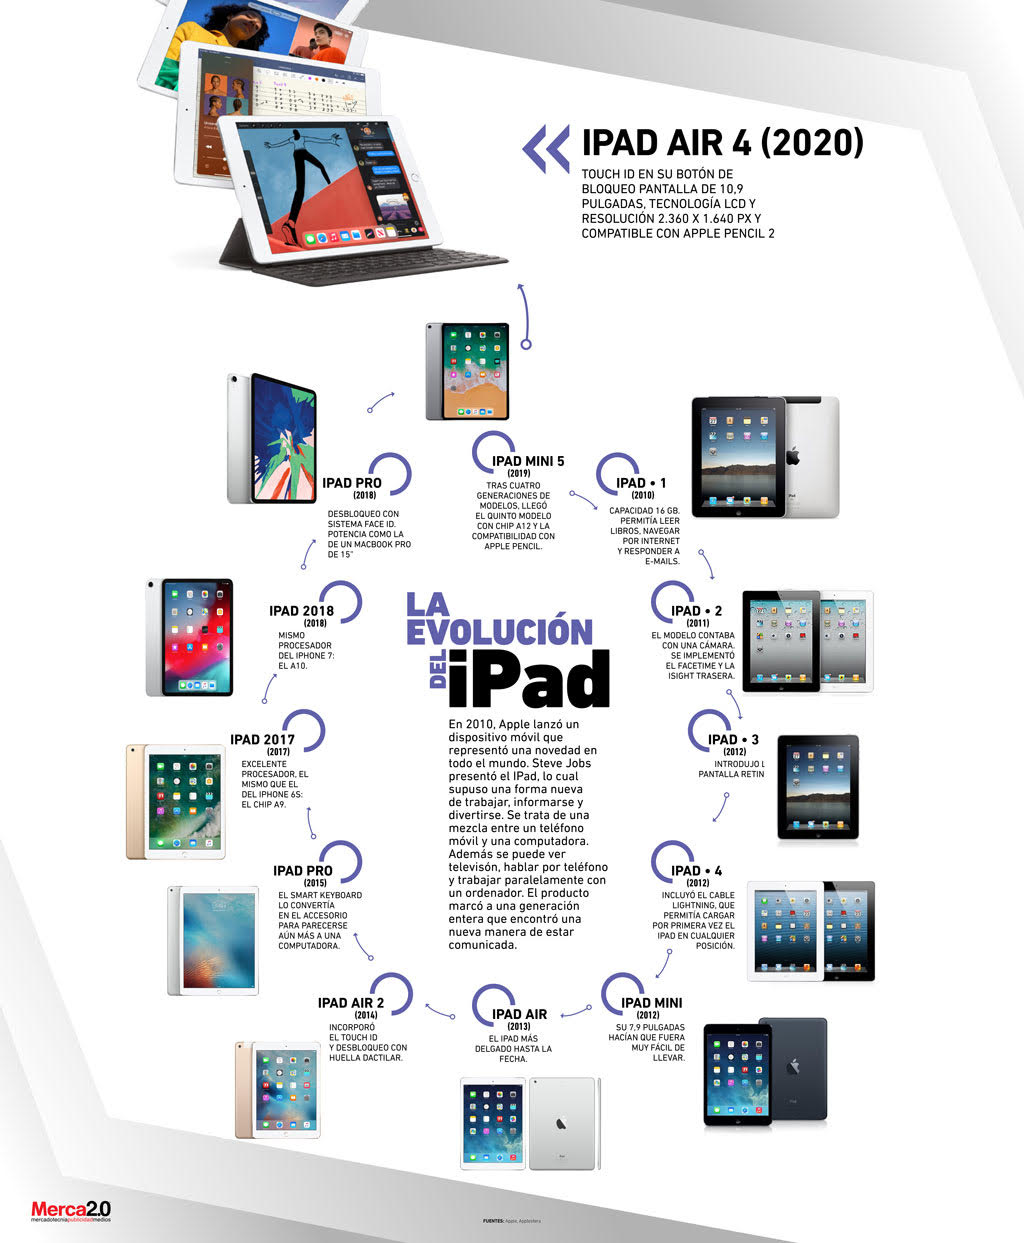 La evolución del iPad